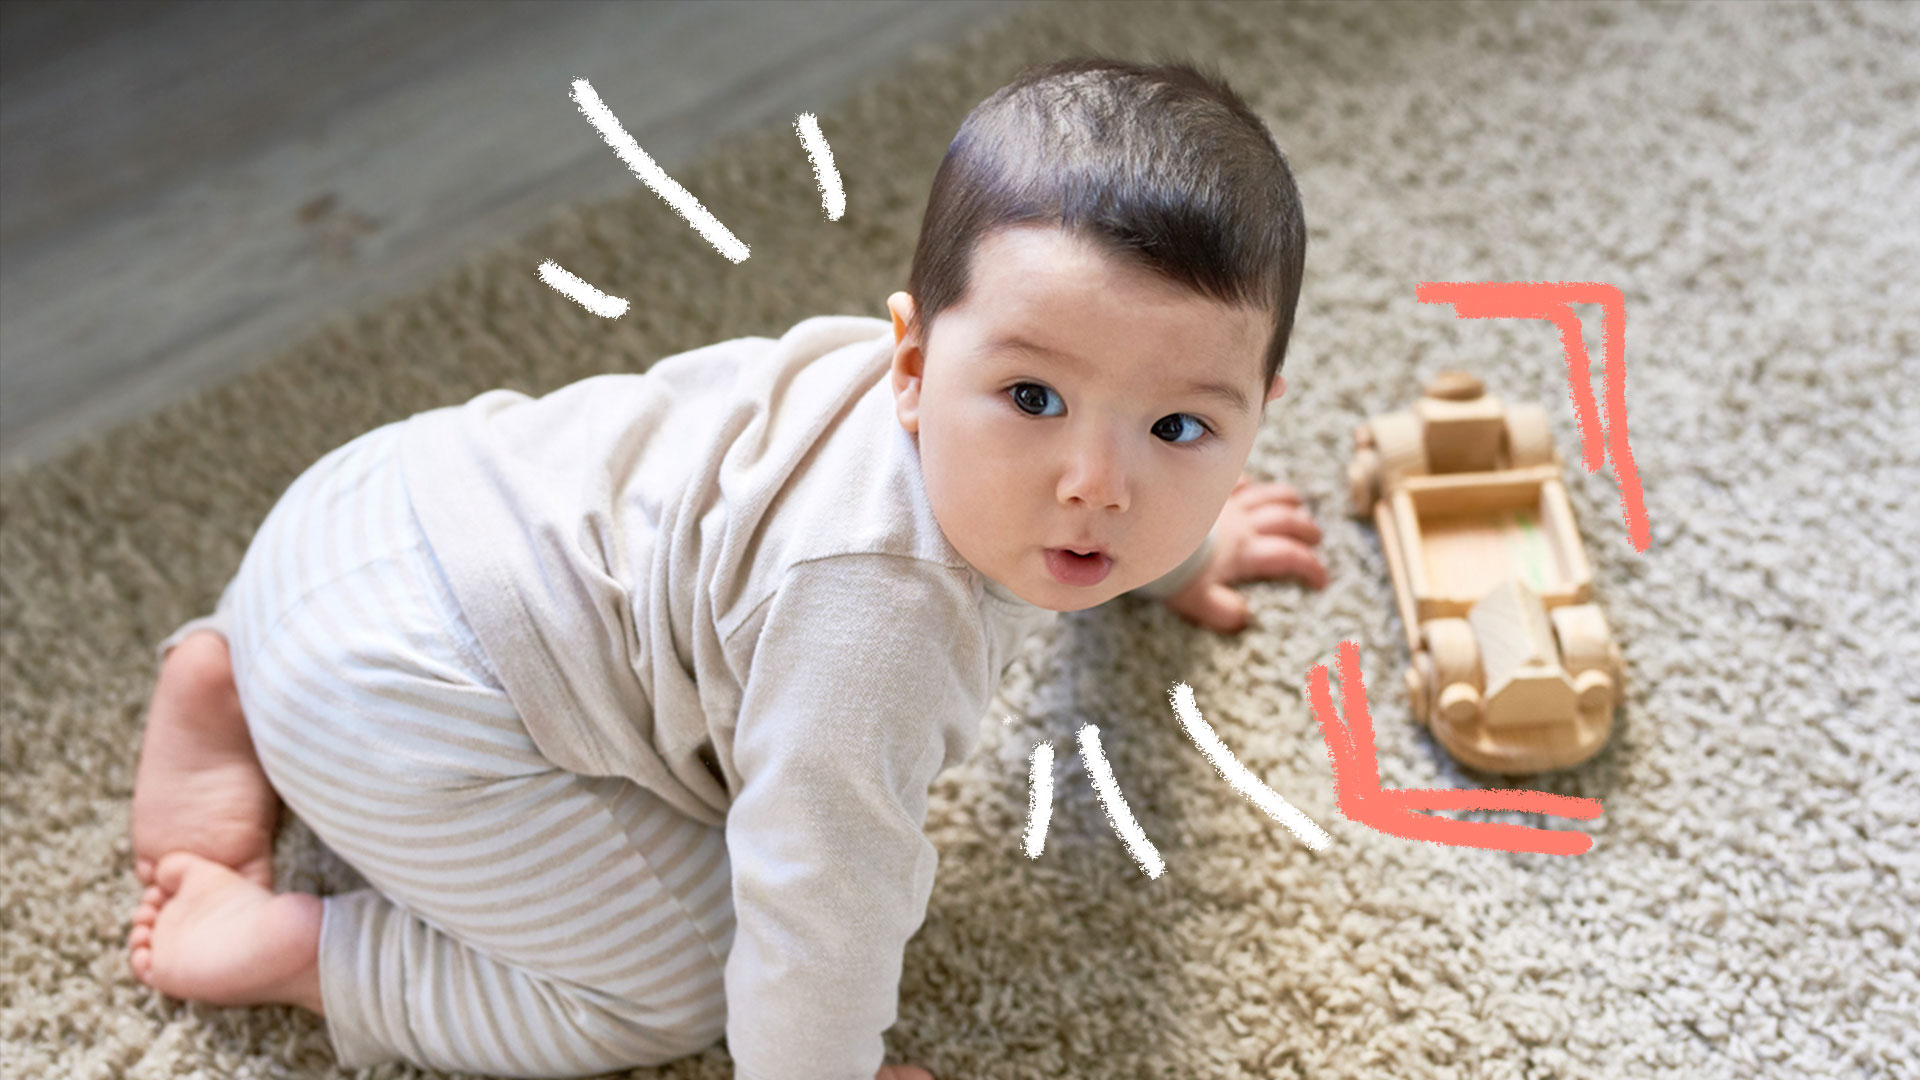 Bebê engatinhando em tapete felpudo, onde há um carrinho de brinquedo feito de madeira.